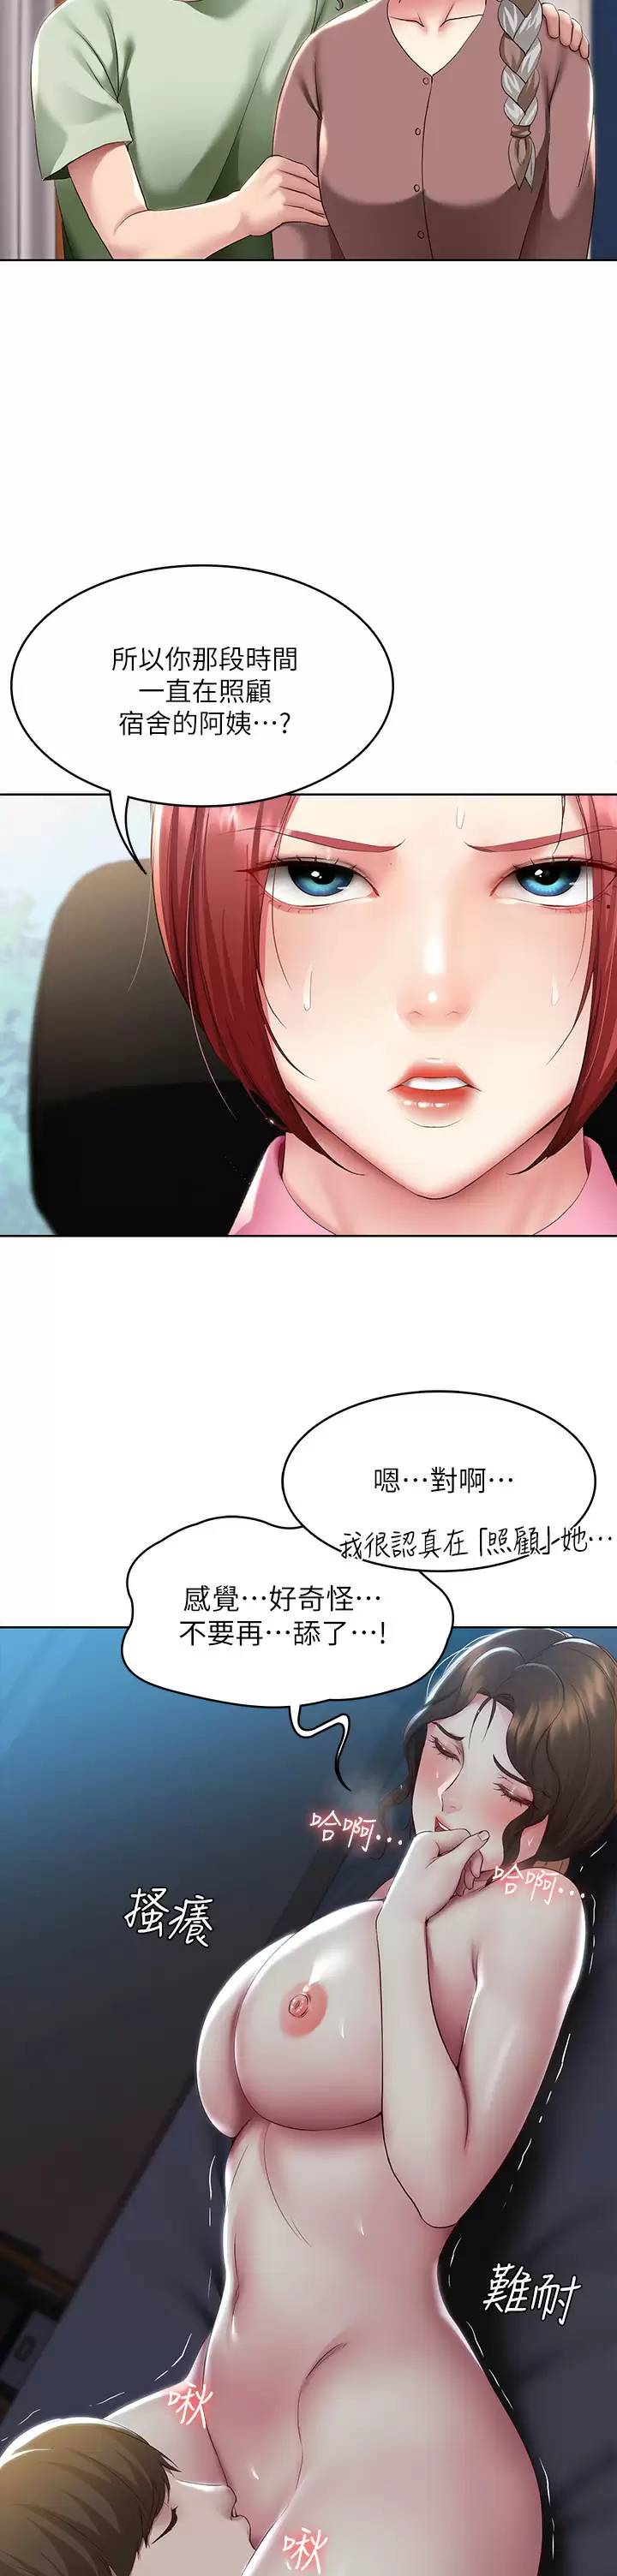 韩国污漫画 寄宿日記 第108话和性感女教授一对一补课 31